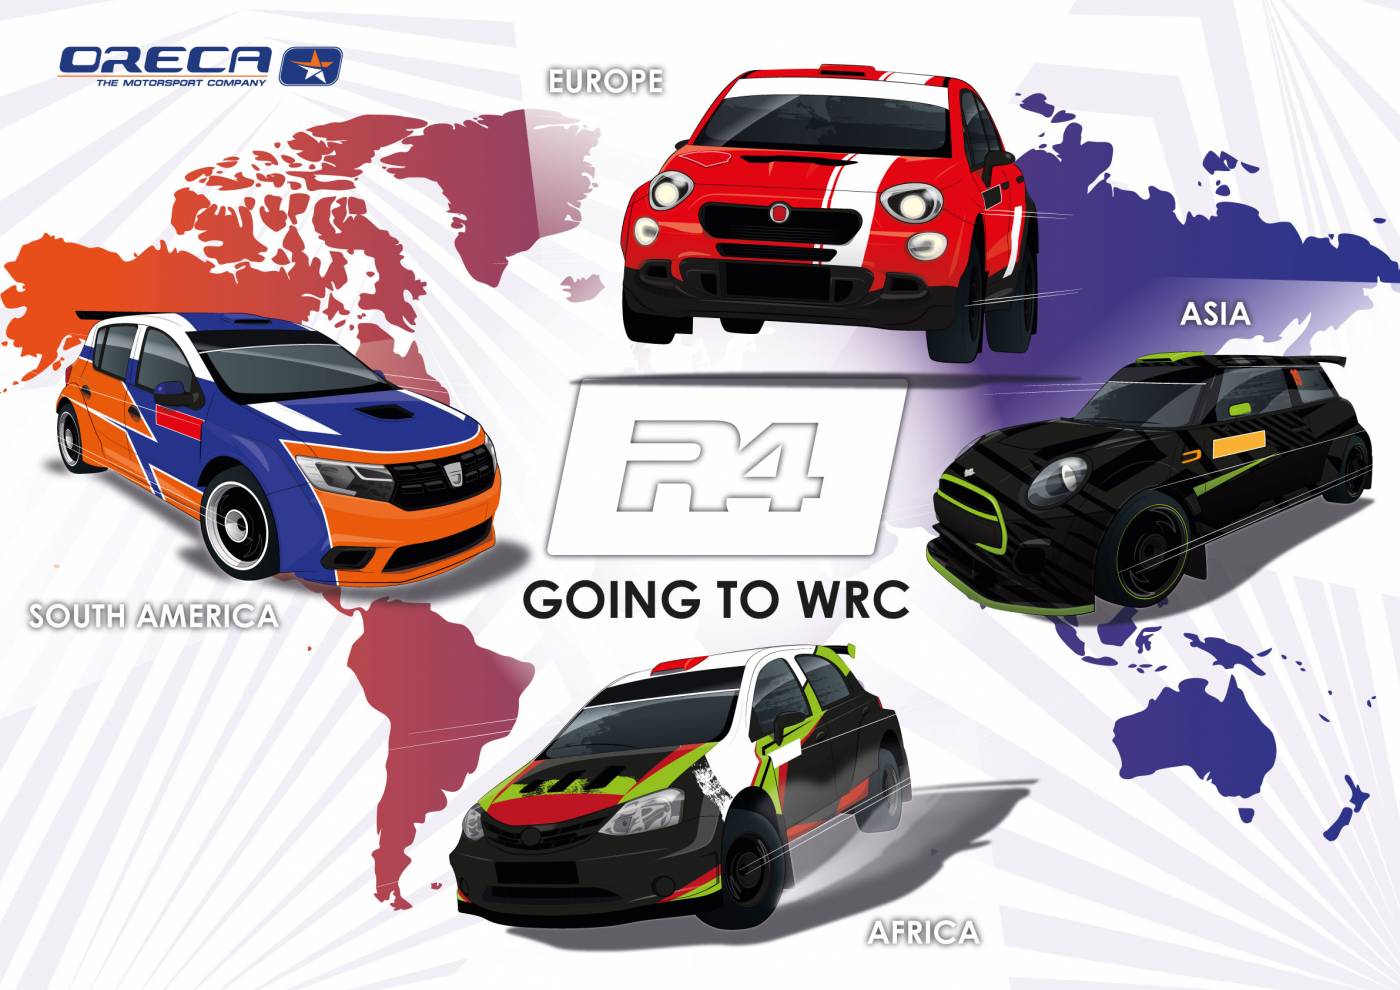 Le Kit FIA R4 accepté en Championnat du Monde des Rallyes dès 2020